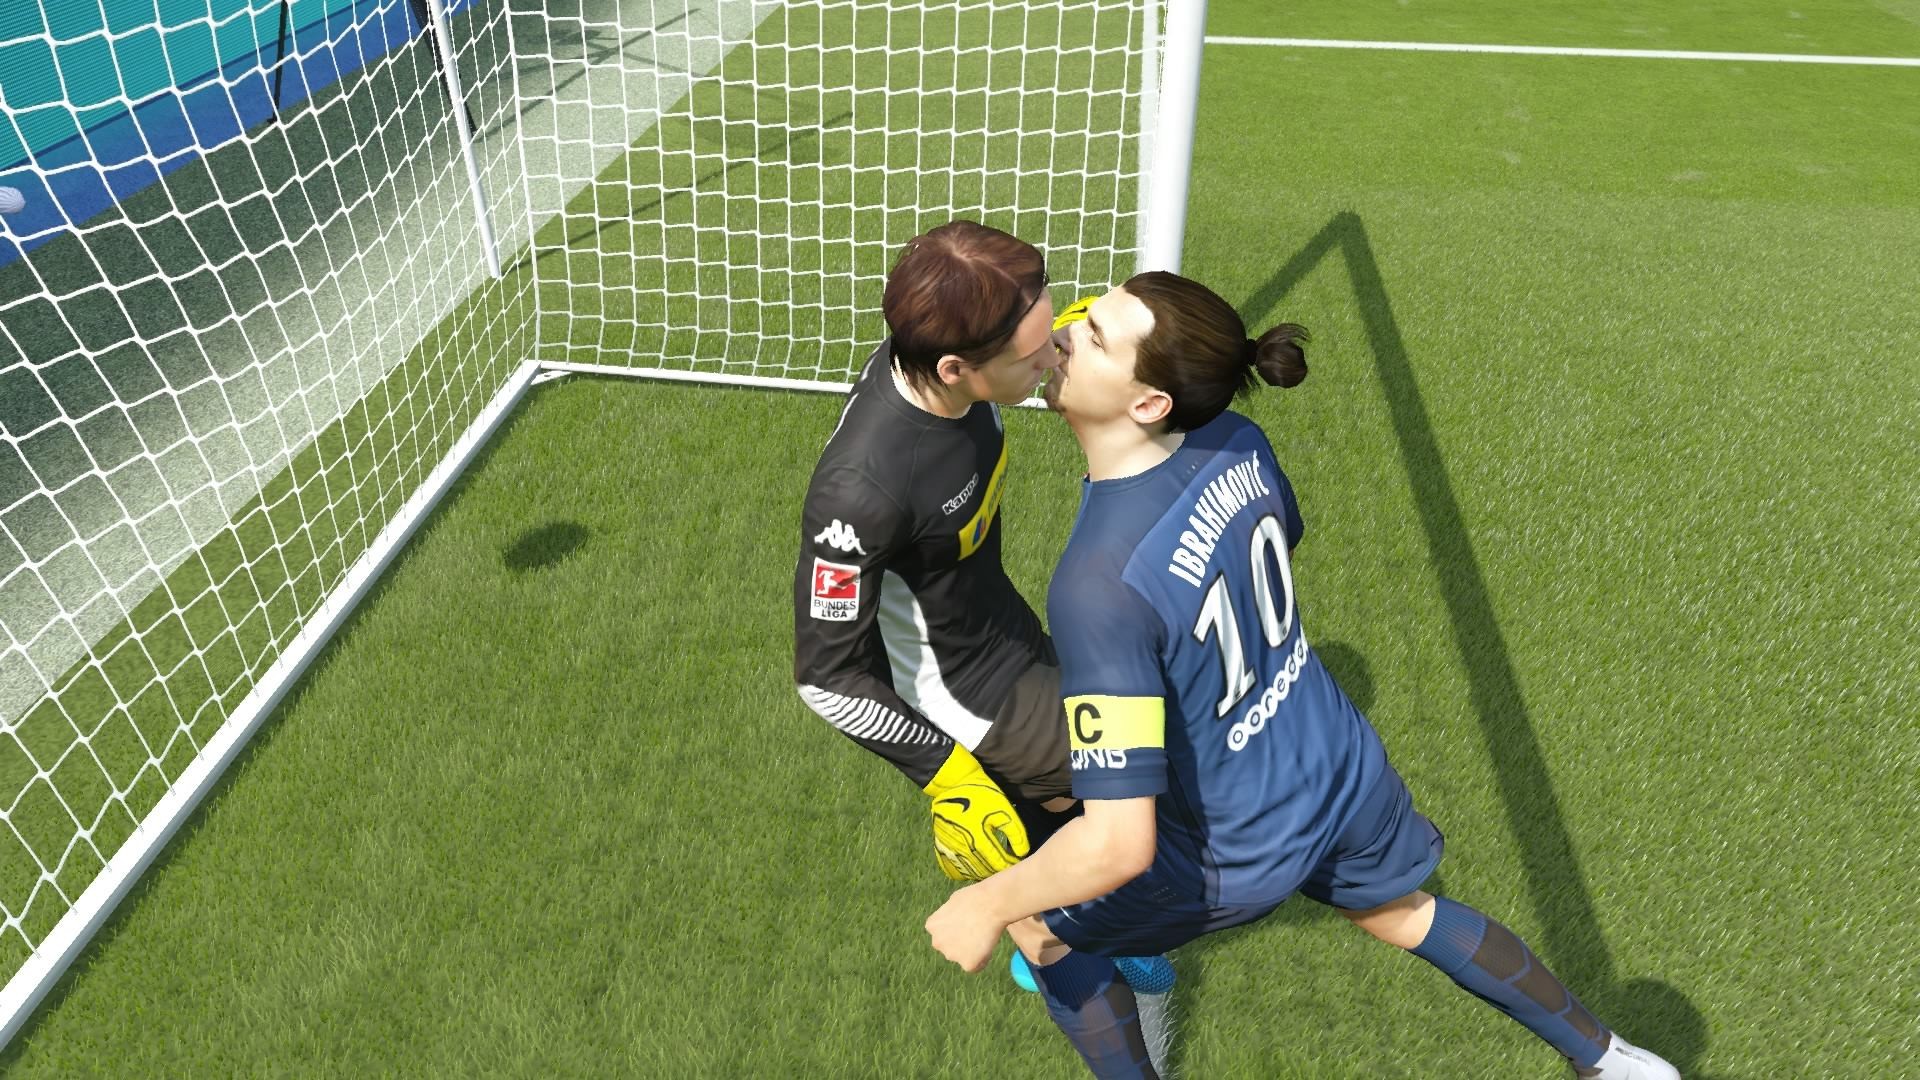 1920x1080 True love in FIFA 16!